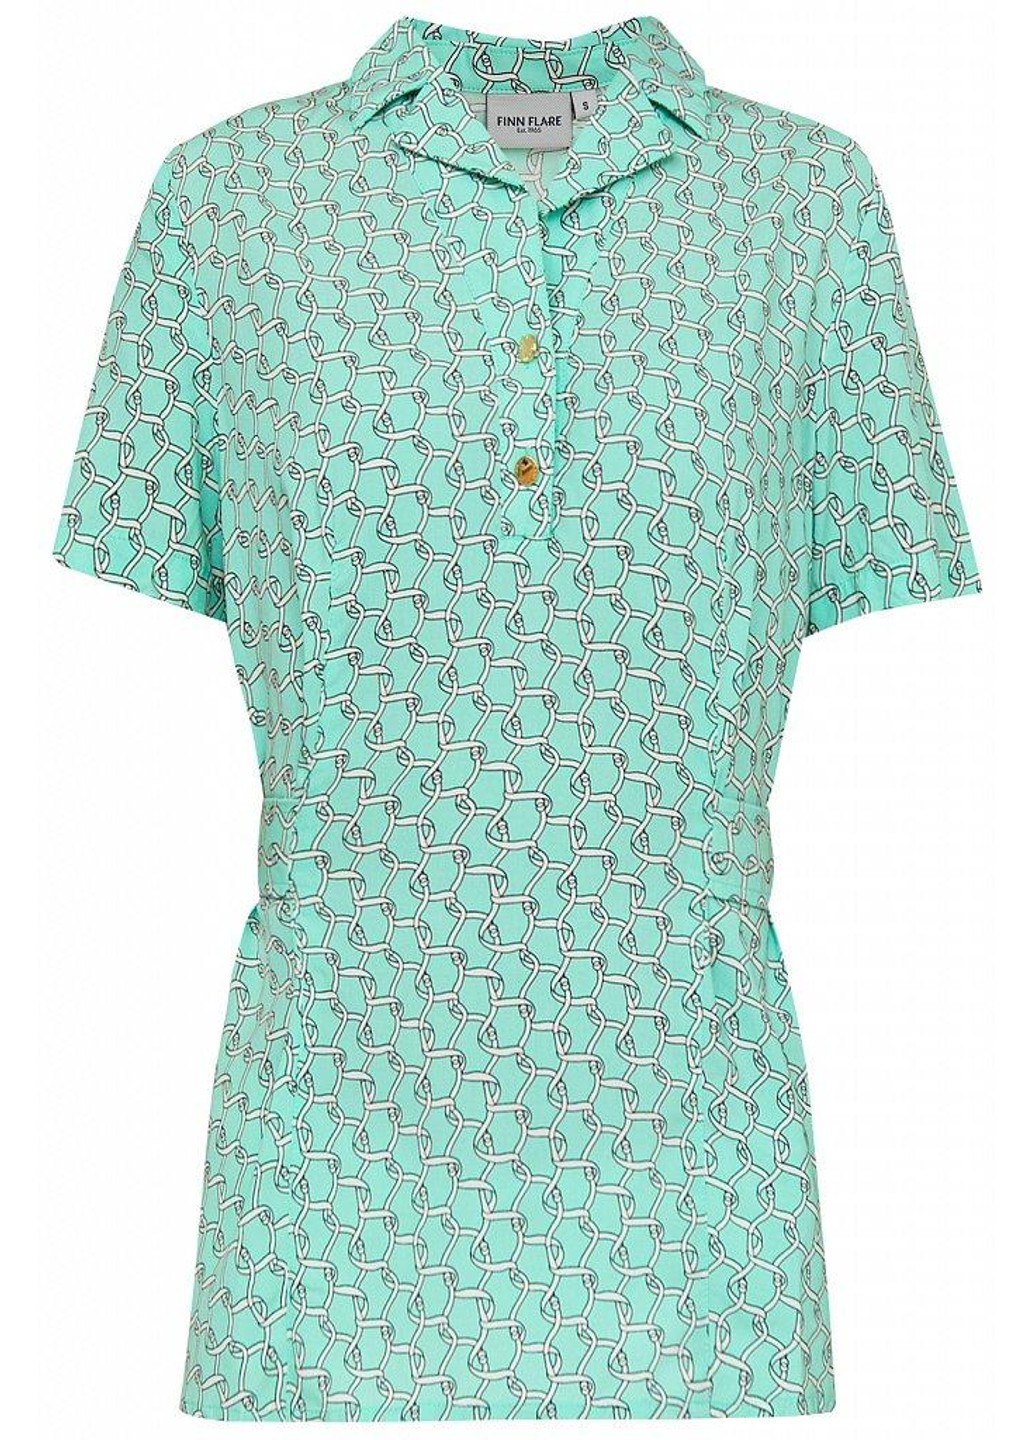 Бірюзова літня блуза s20-11063-915 Finn Flare